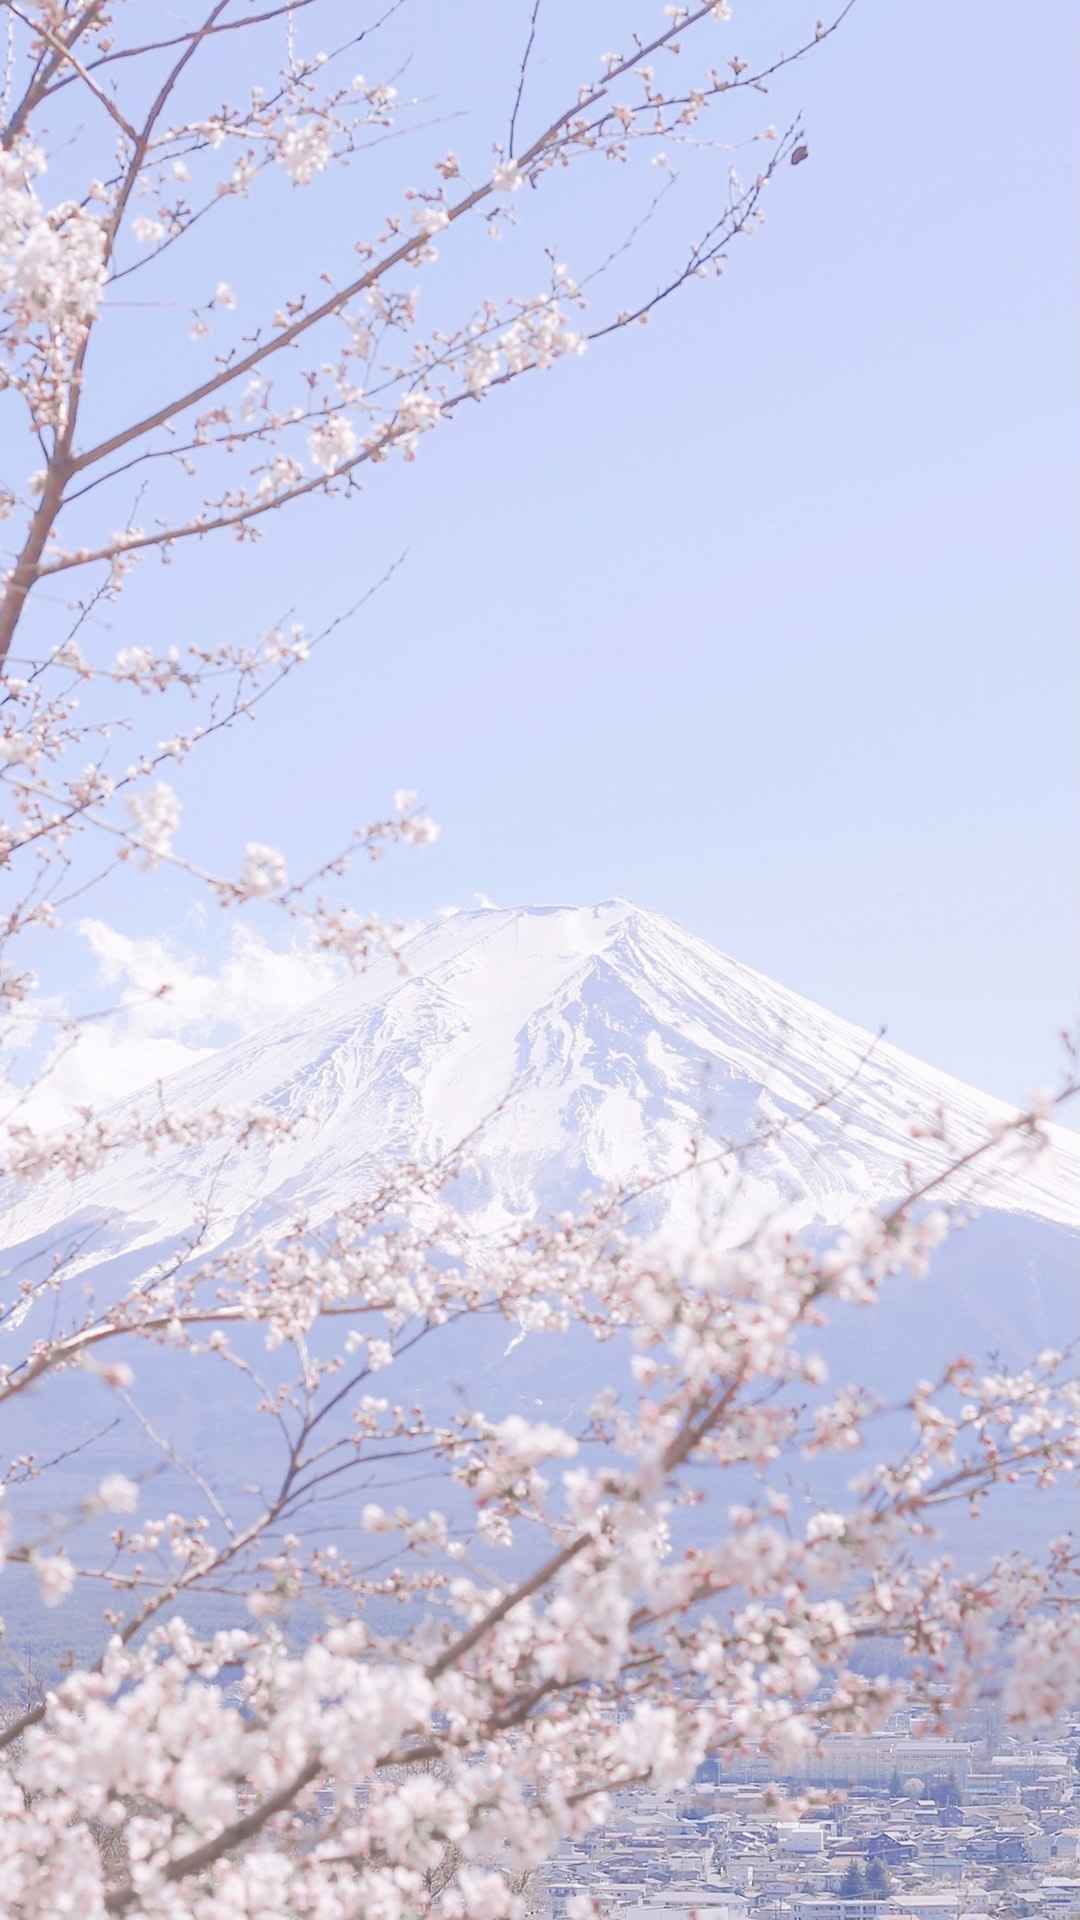 富士山优美迷人风光古韵淡雅图片-